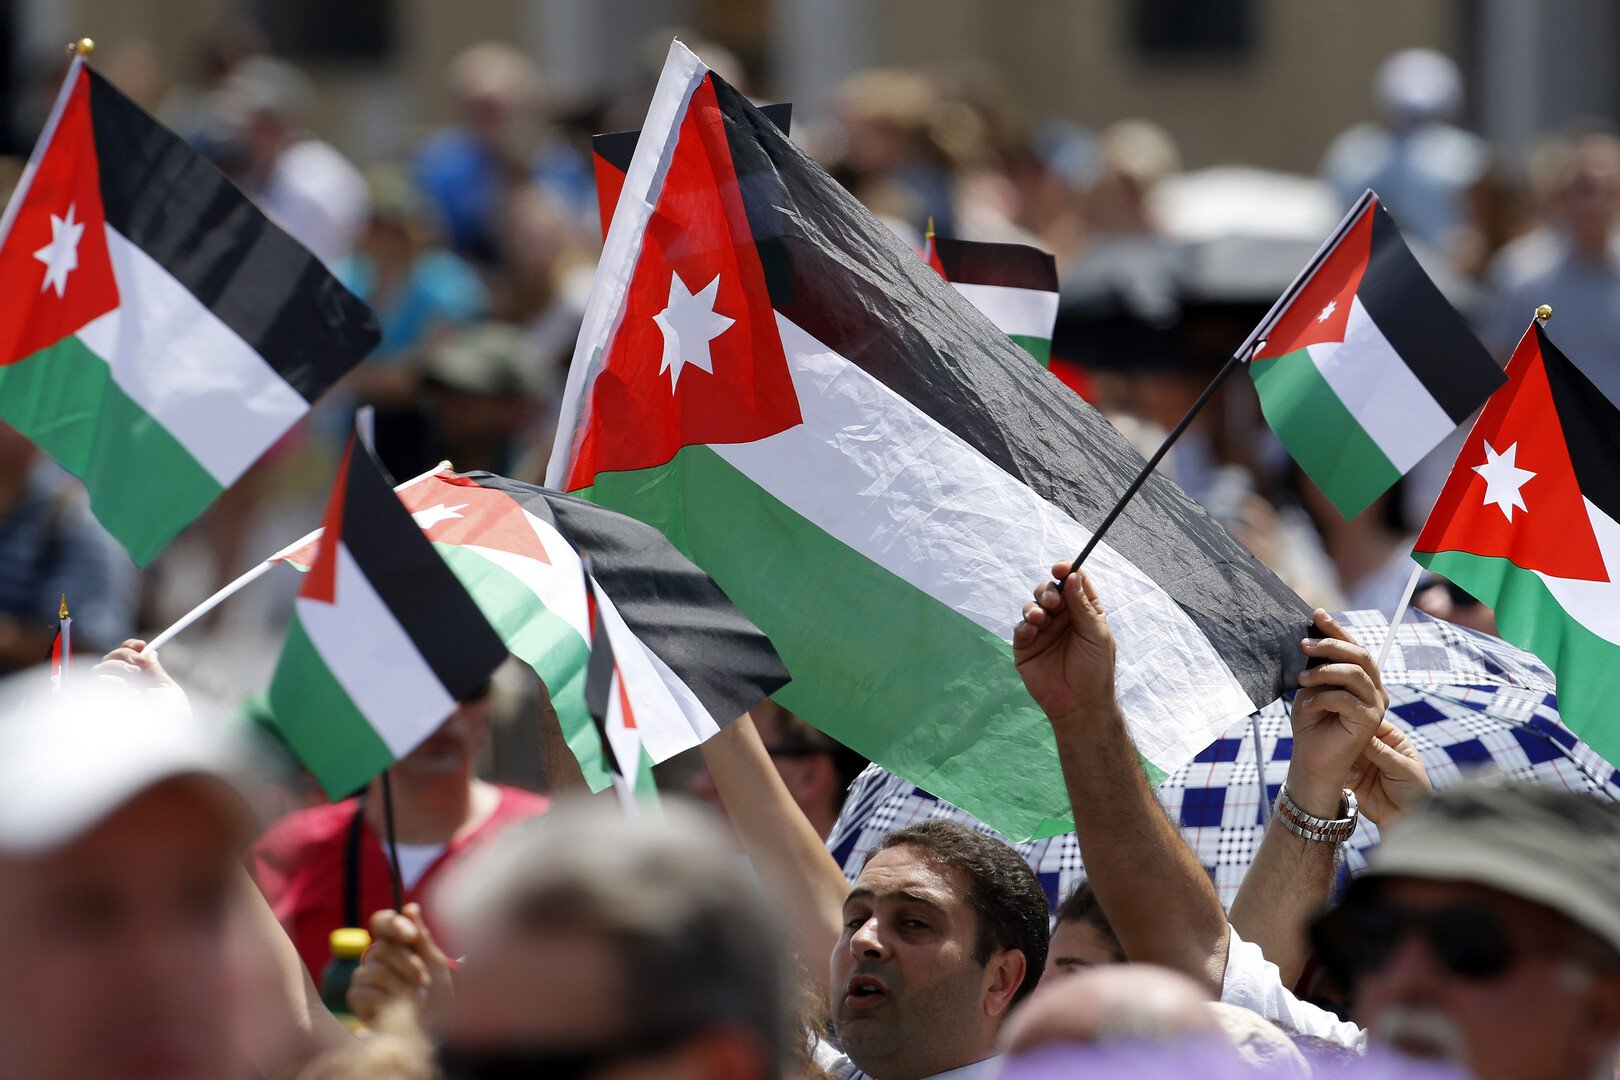 الأردن: تصريح نتنياهو يعد تهديدا خطيرا لعملية السلام